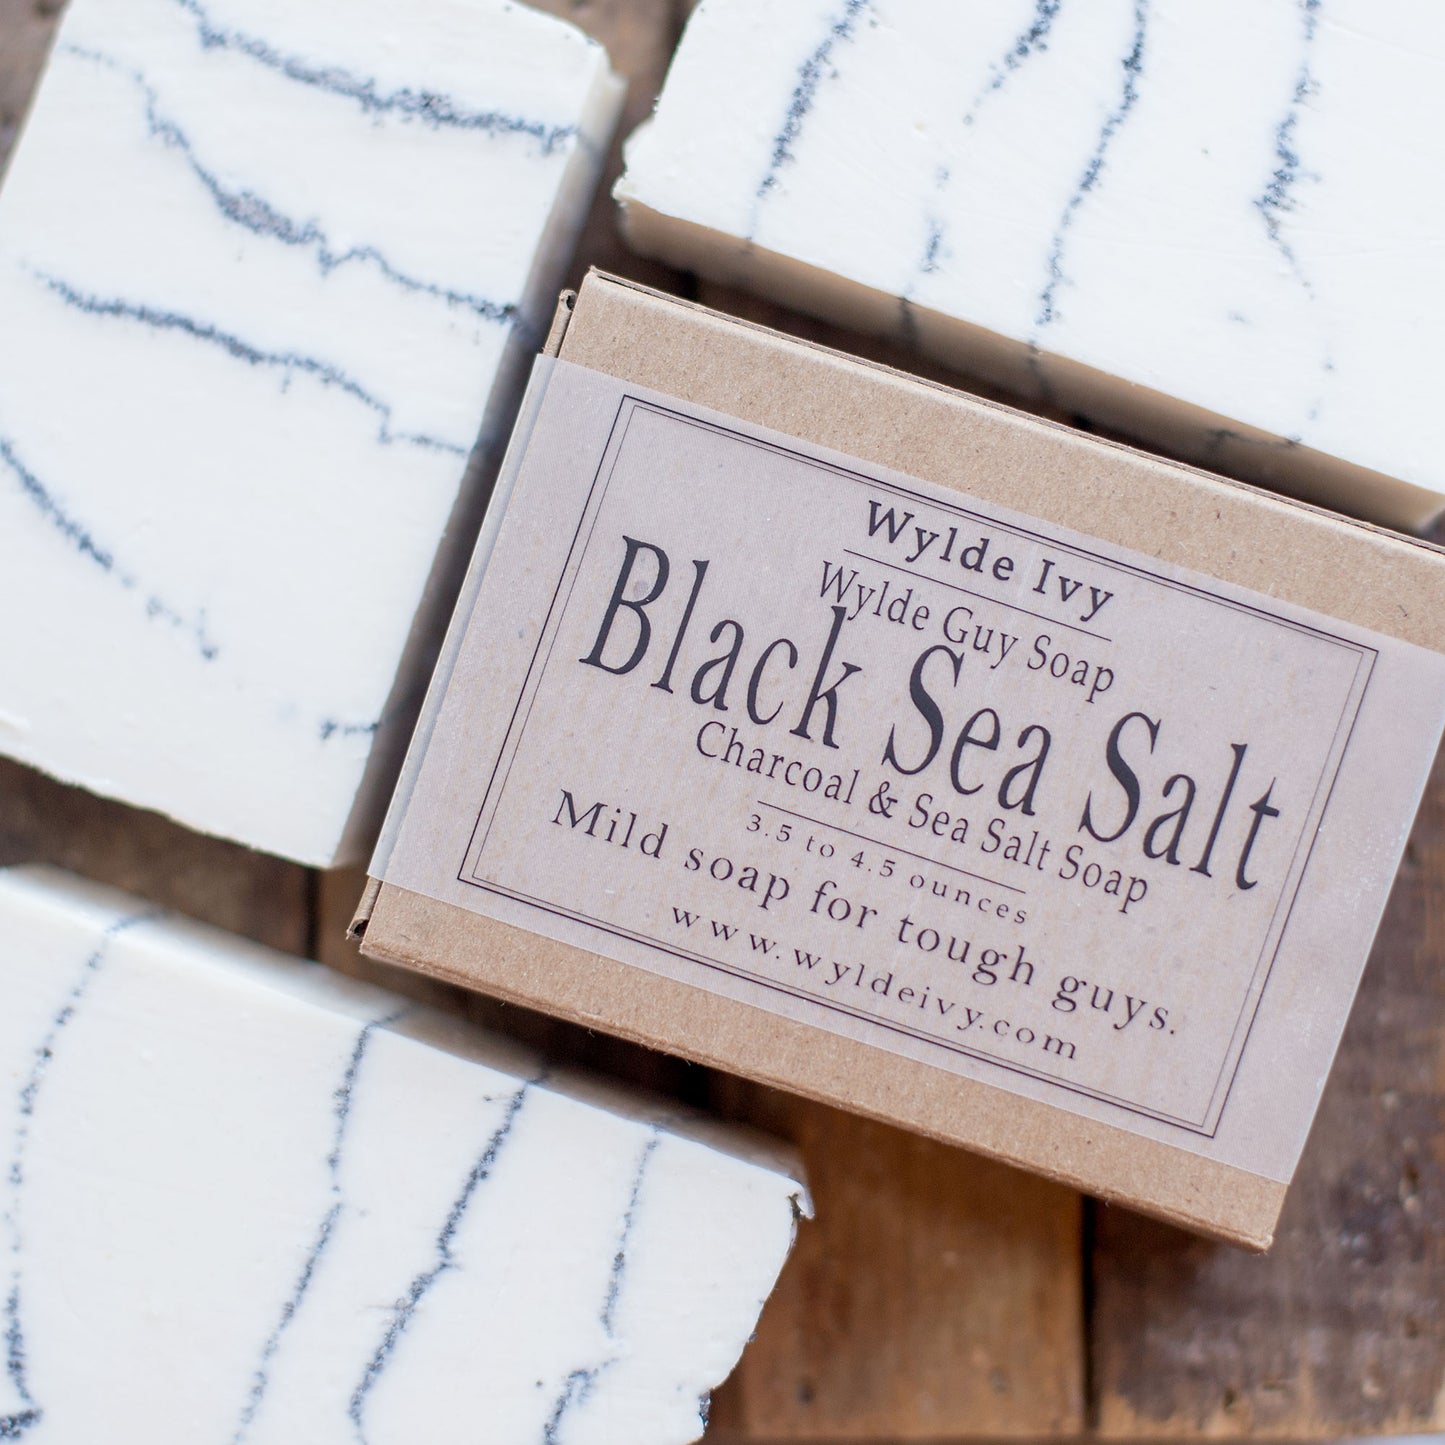 Black Sea Salt Soap